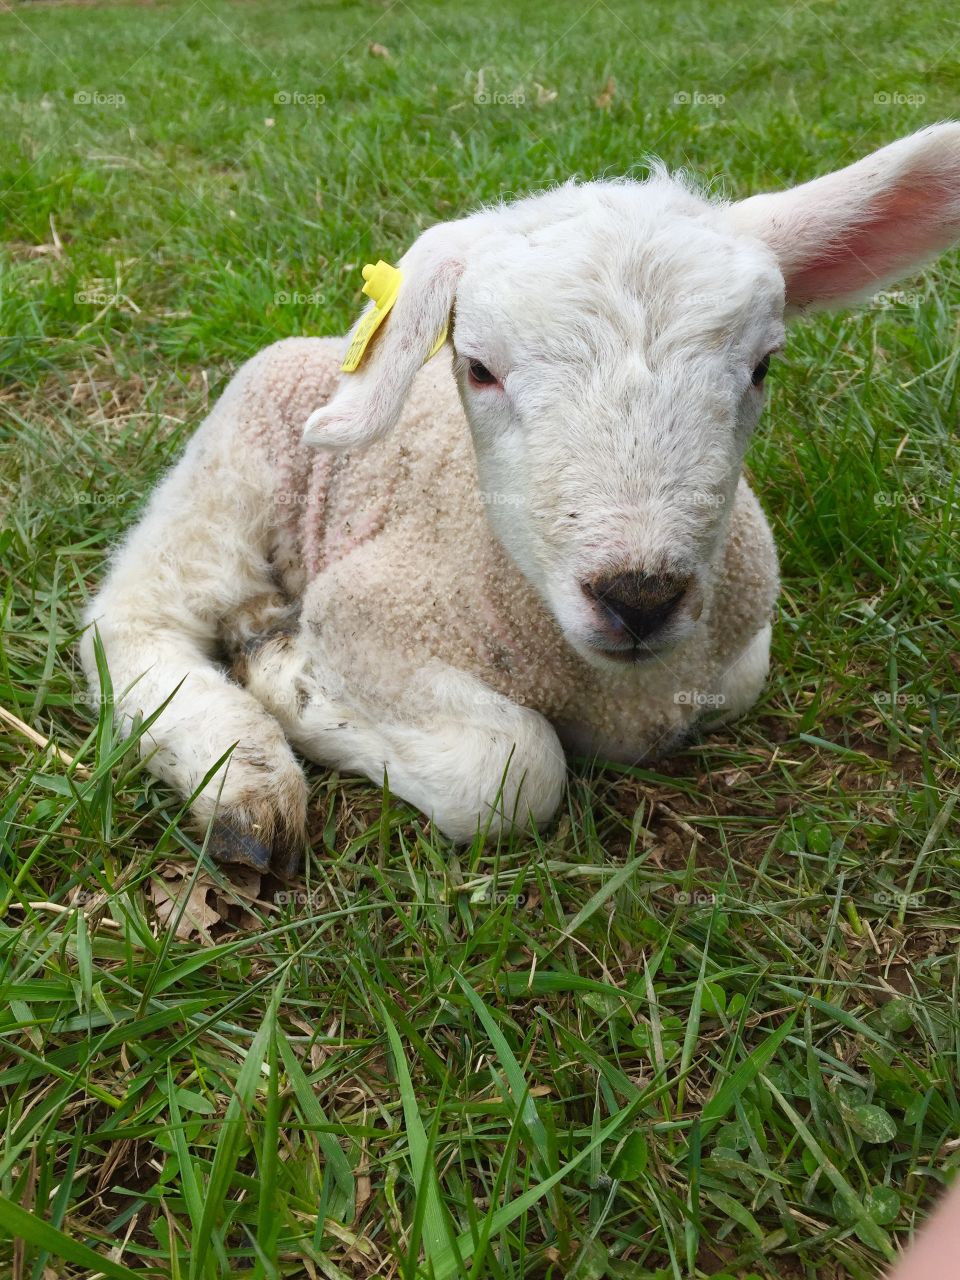 Adorable sheep